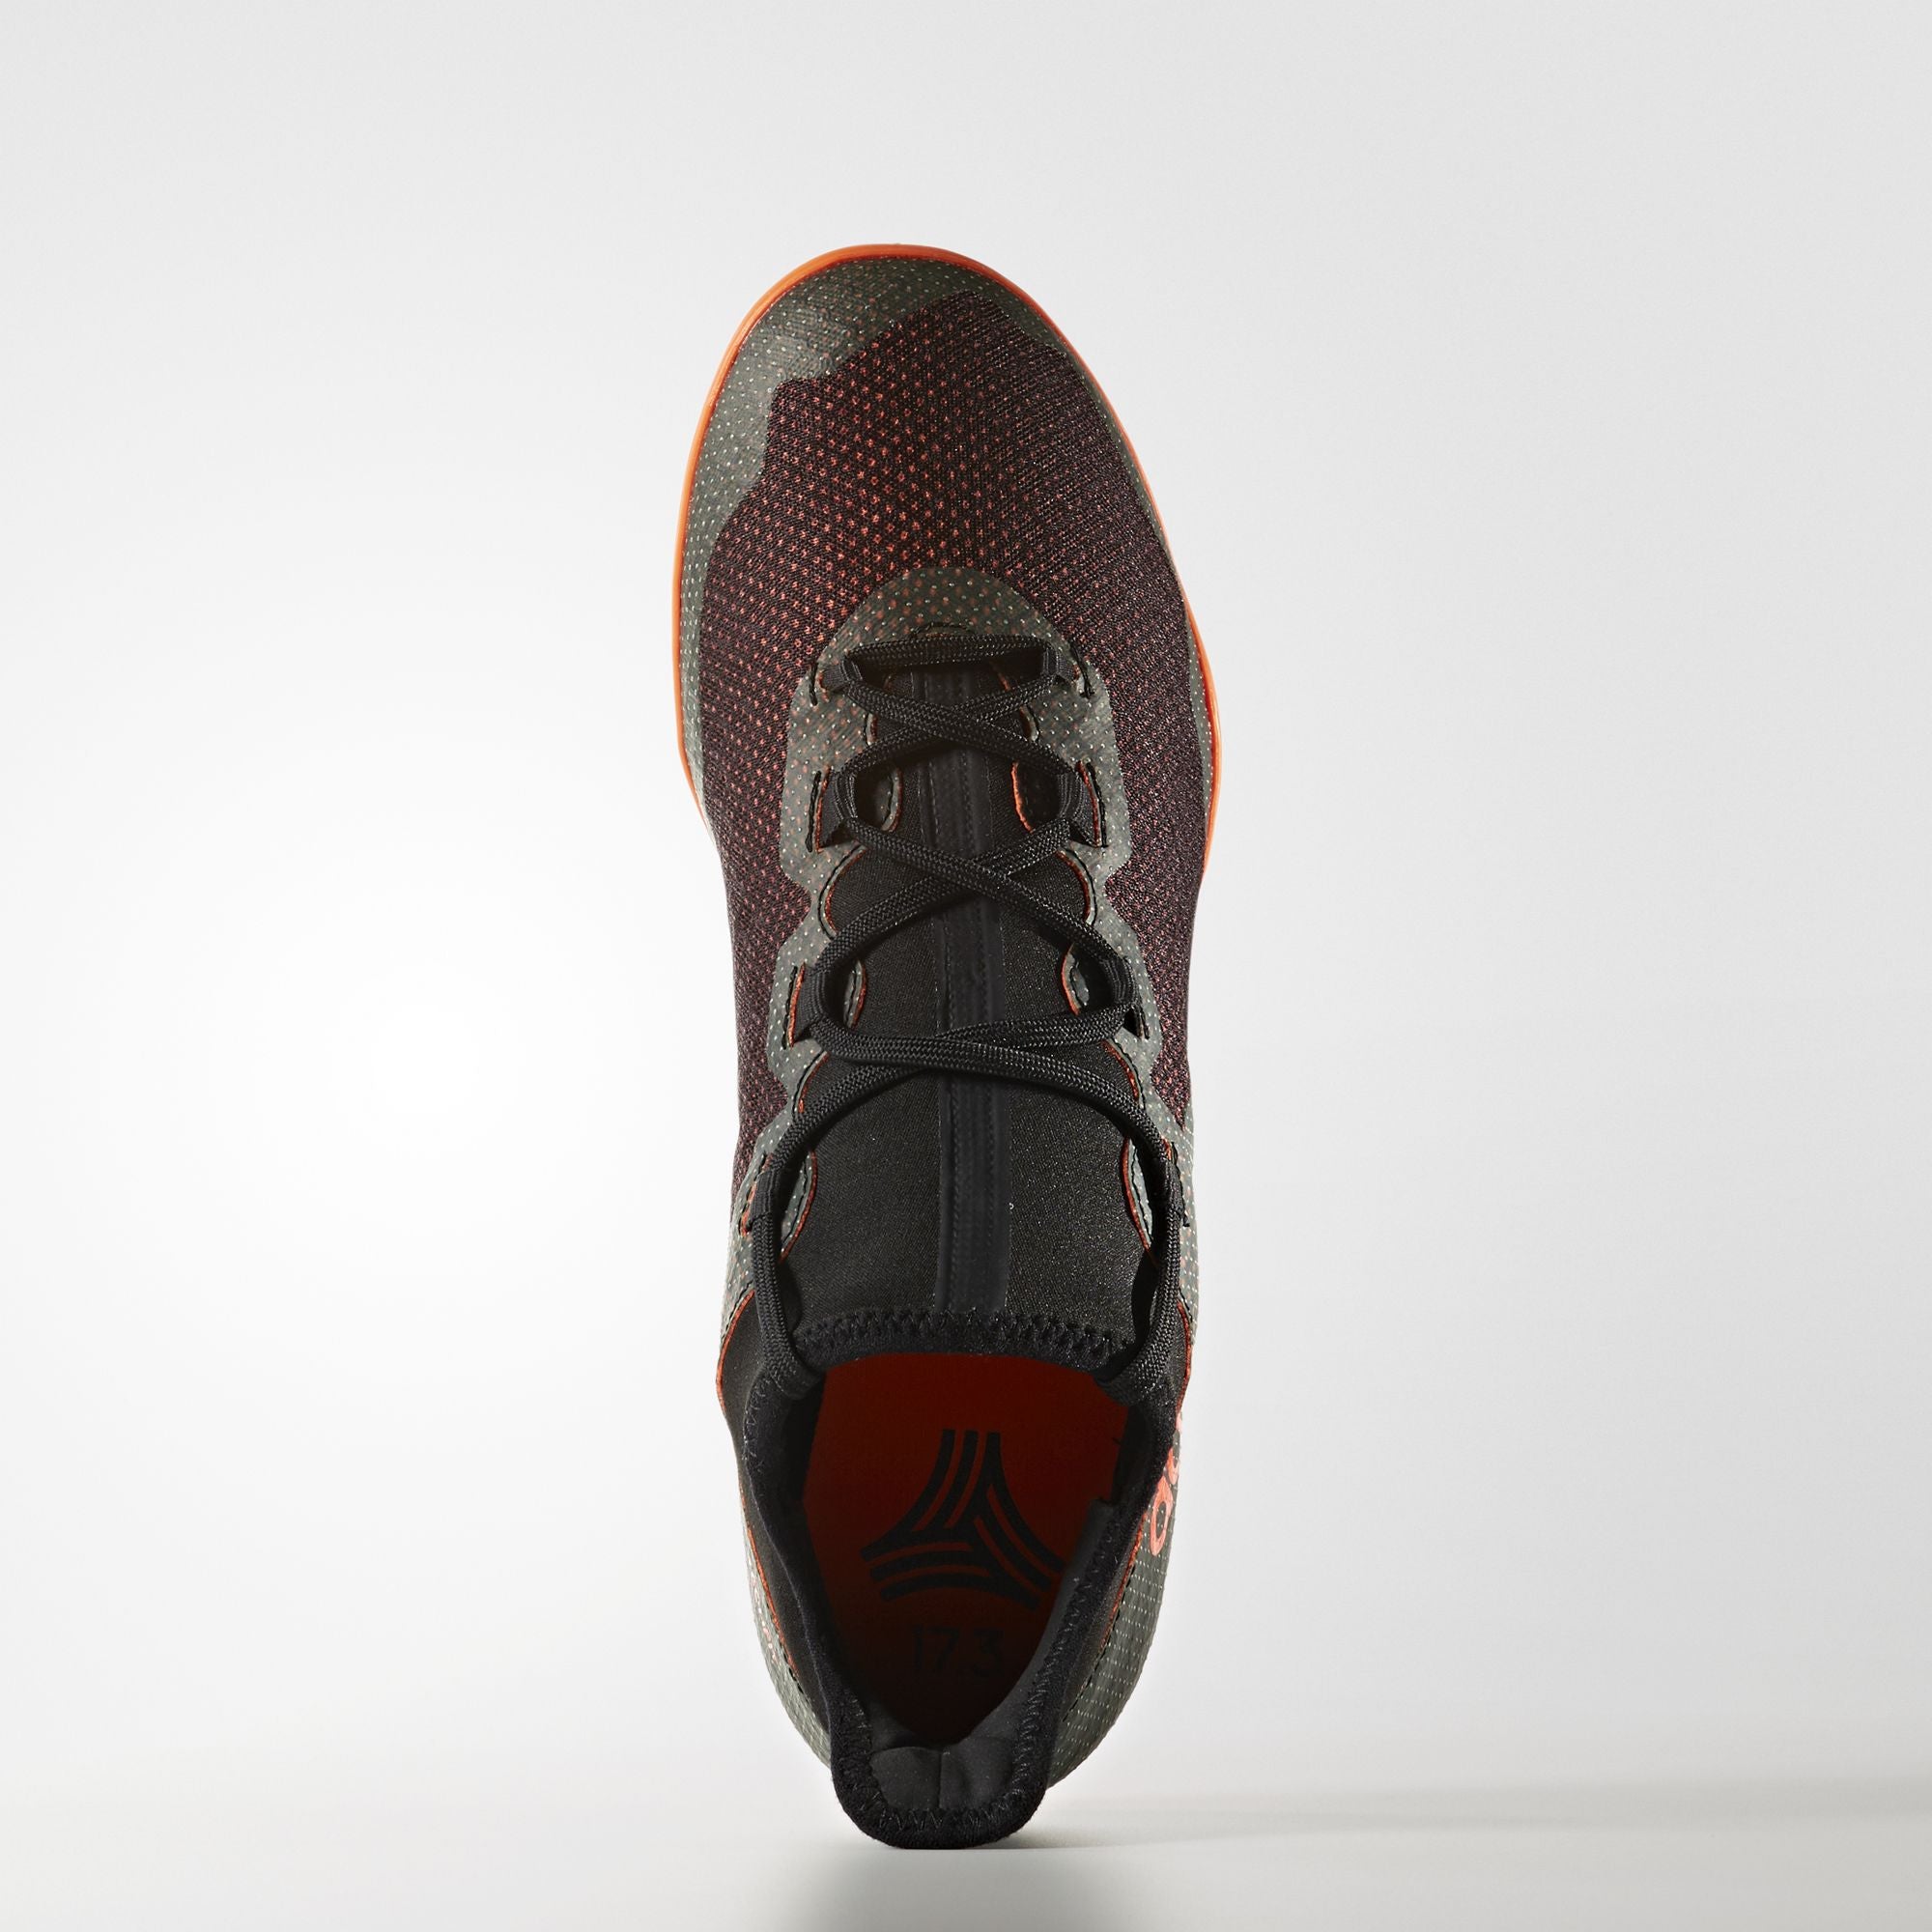 x tango 17.3 indoor shoes